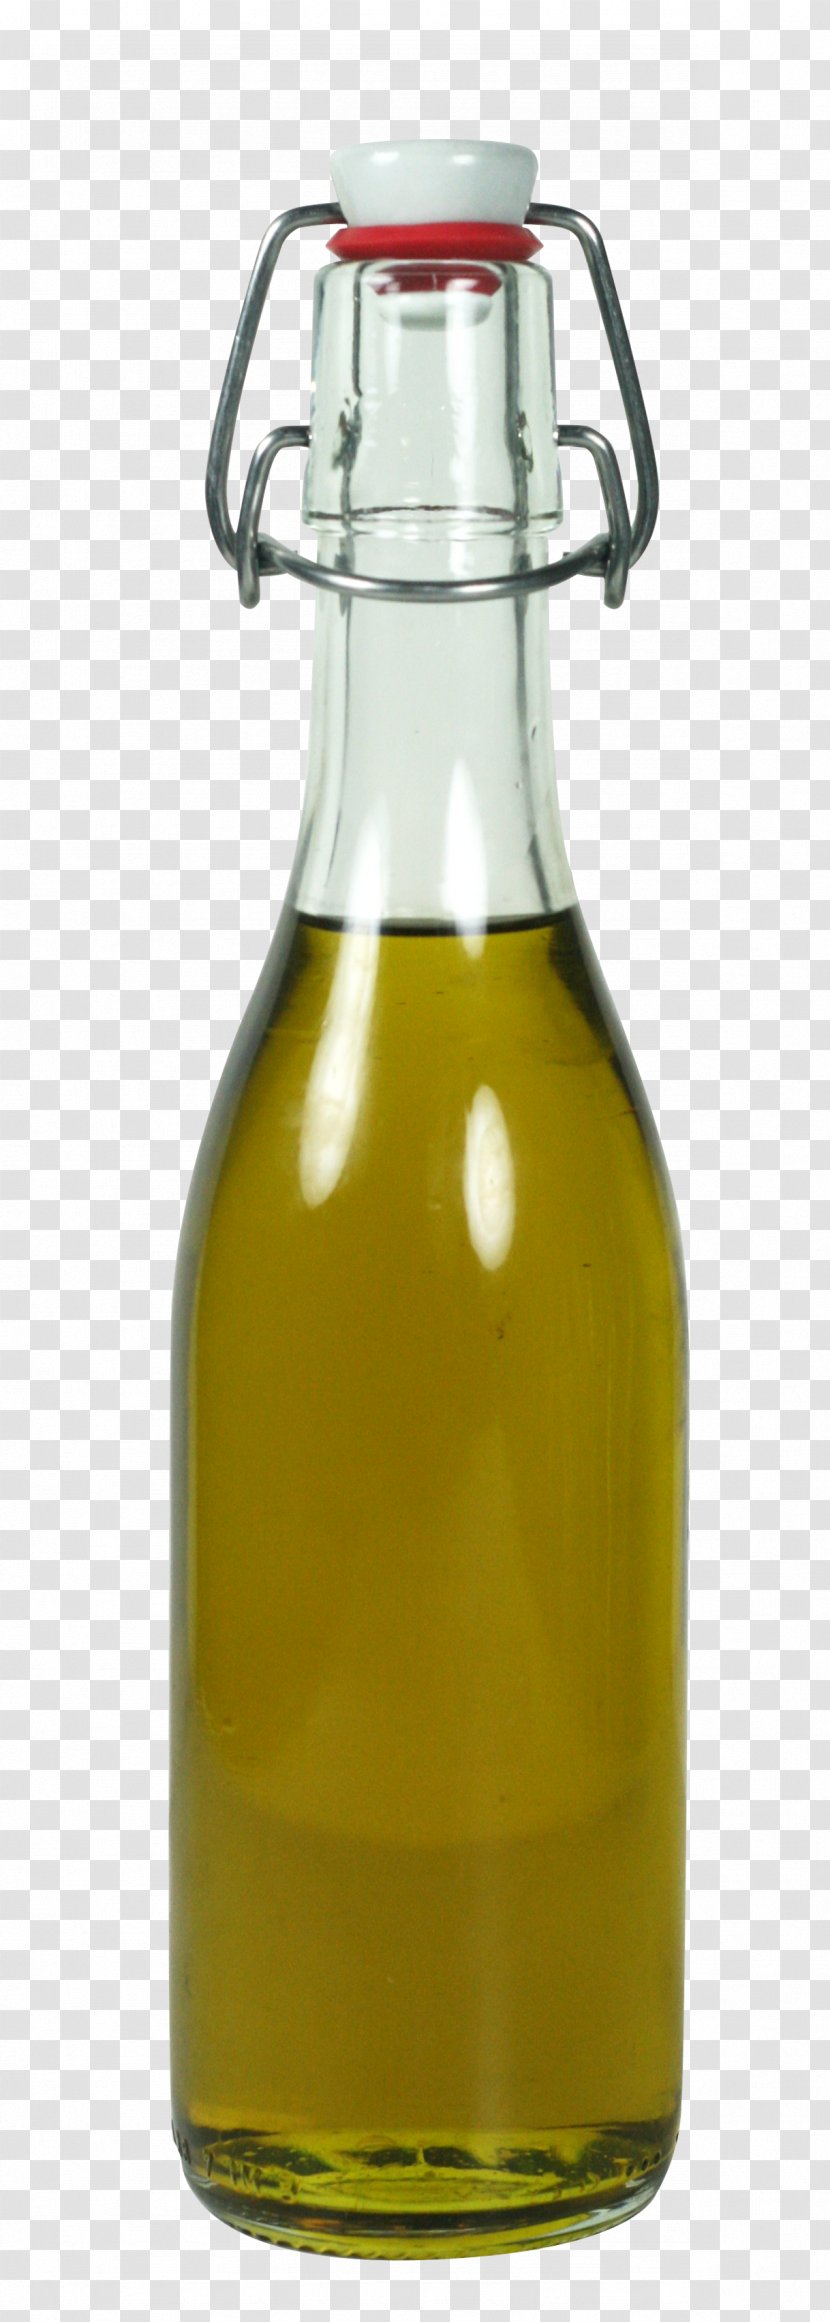 Beer Bottle Vegetable Oil Glass - Barware Transparent PNG